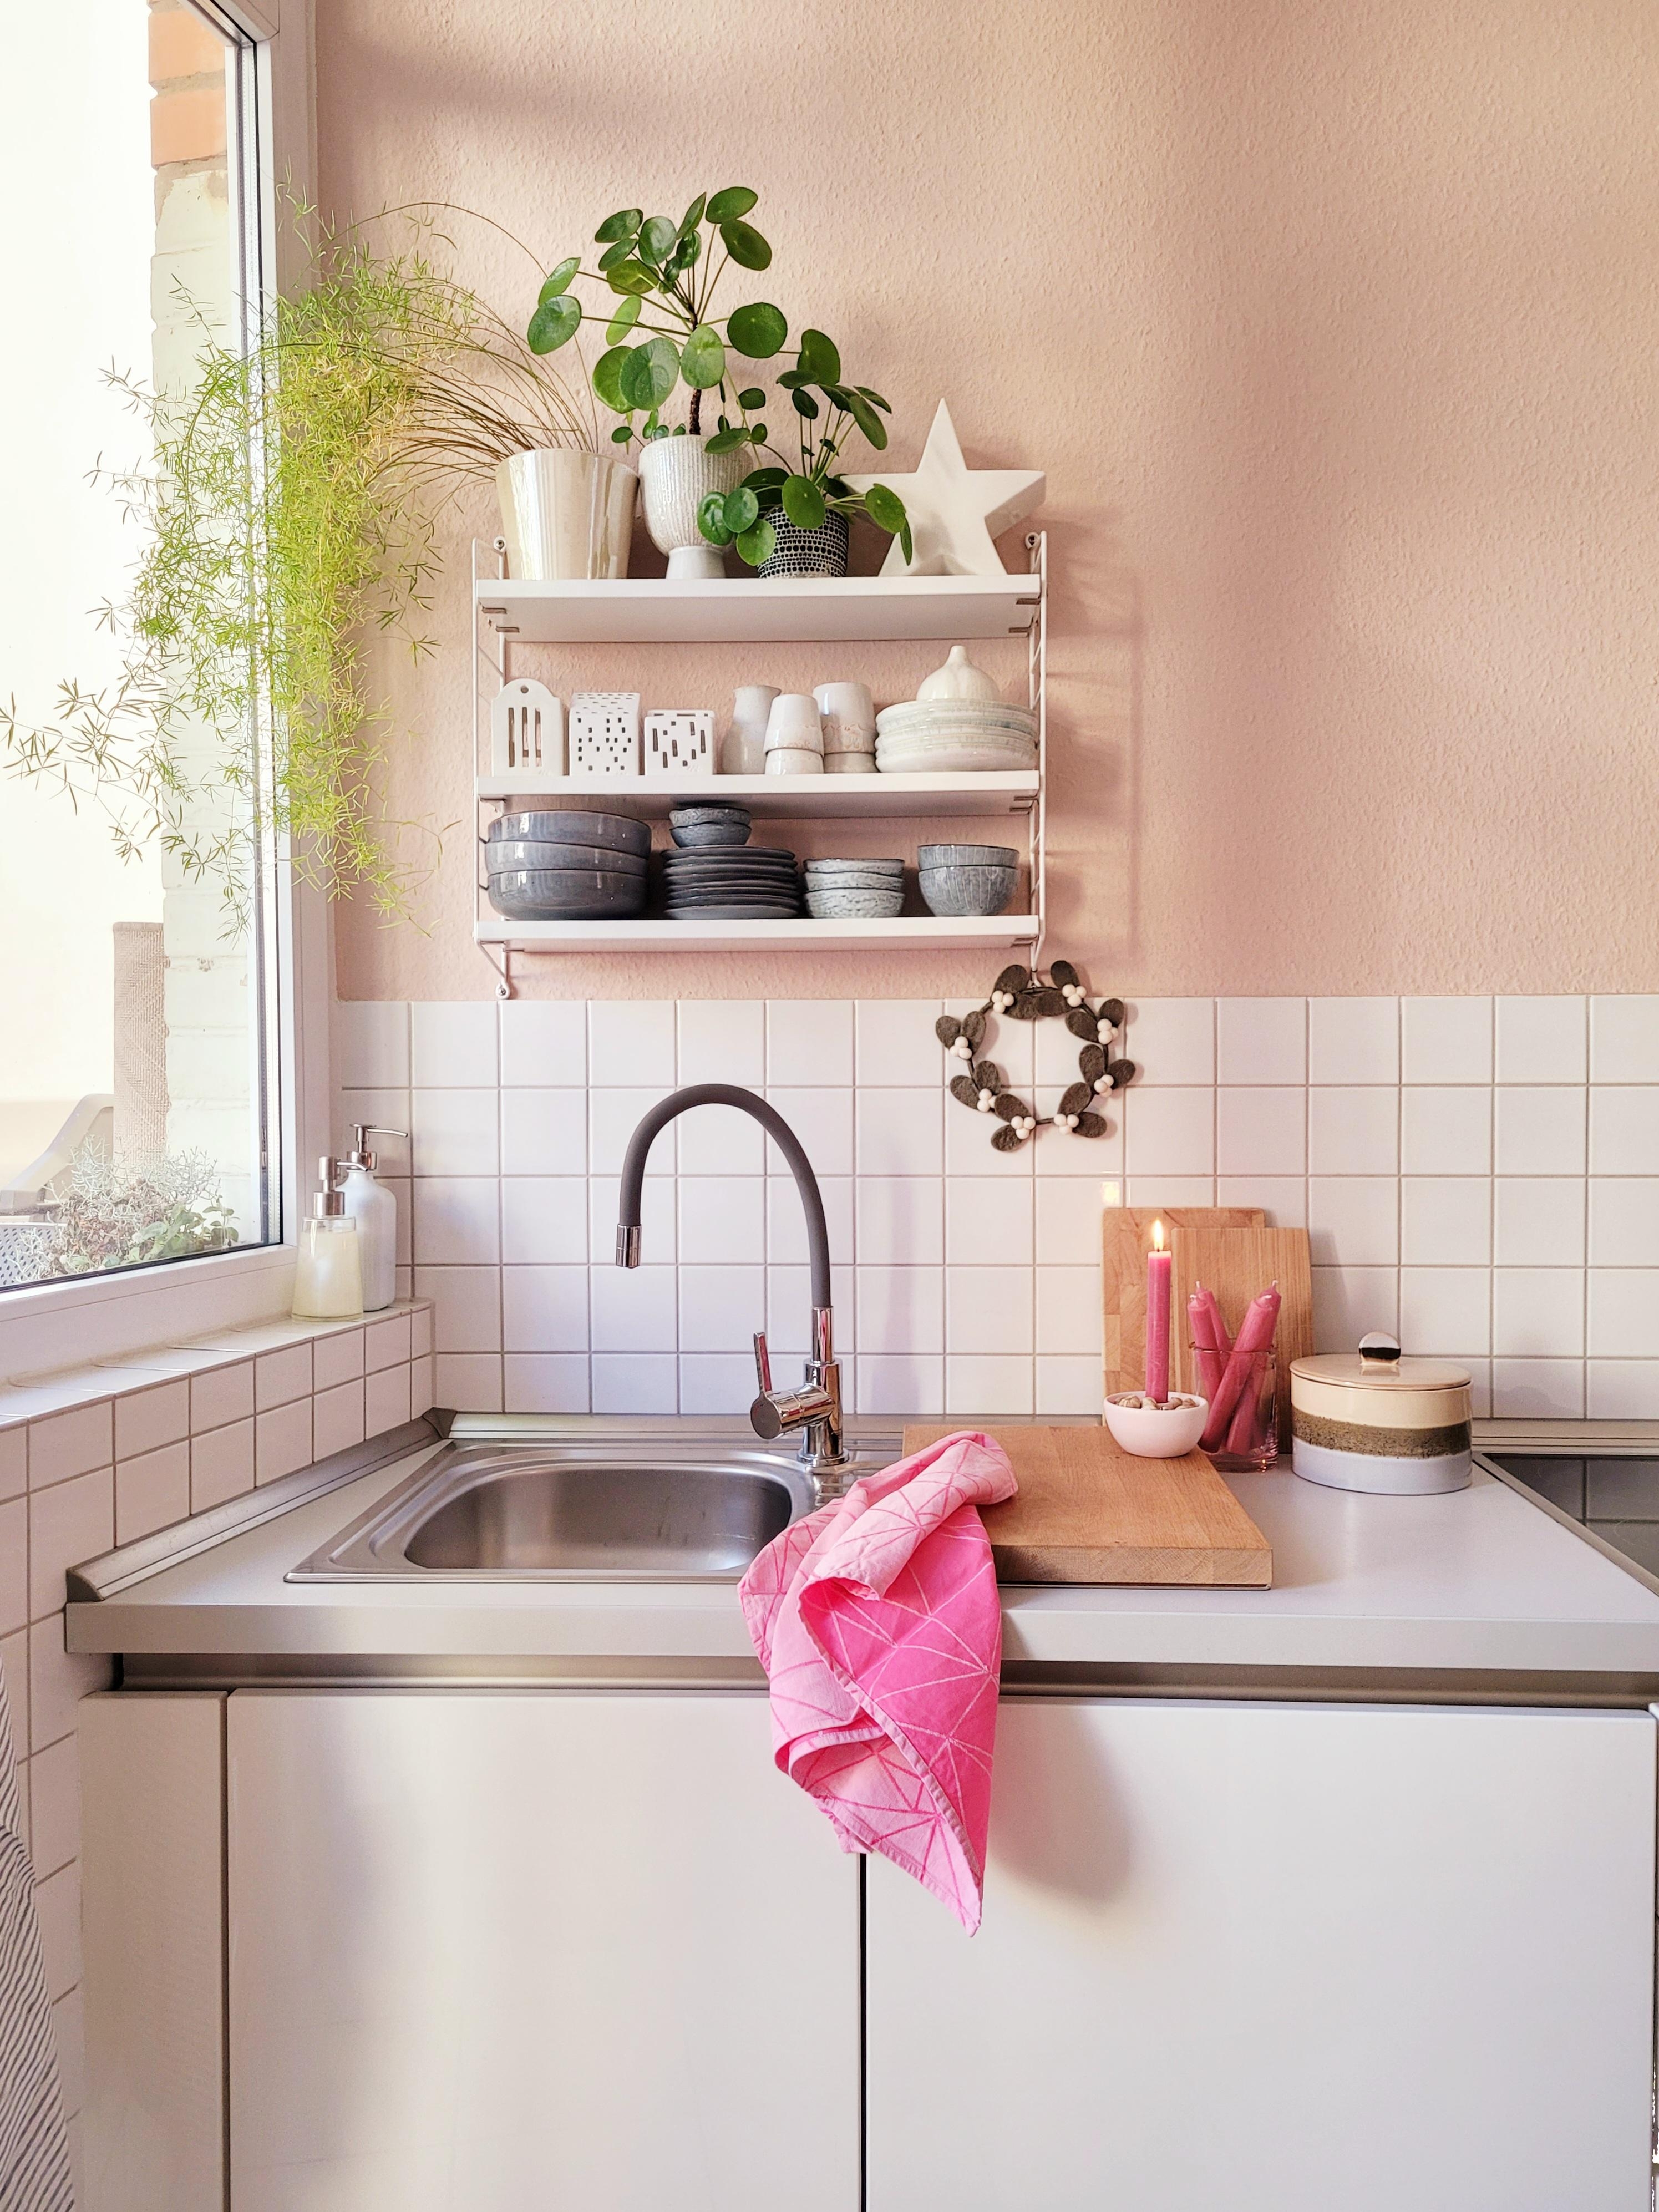 Lieblings Raum, die Küche!
#Altbau #Küche #colourful 